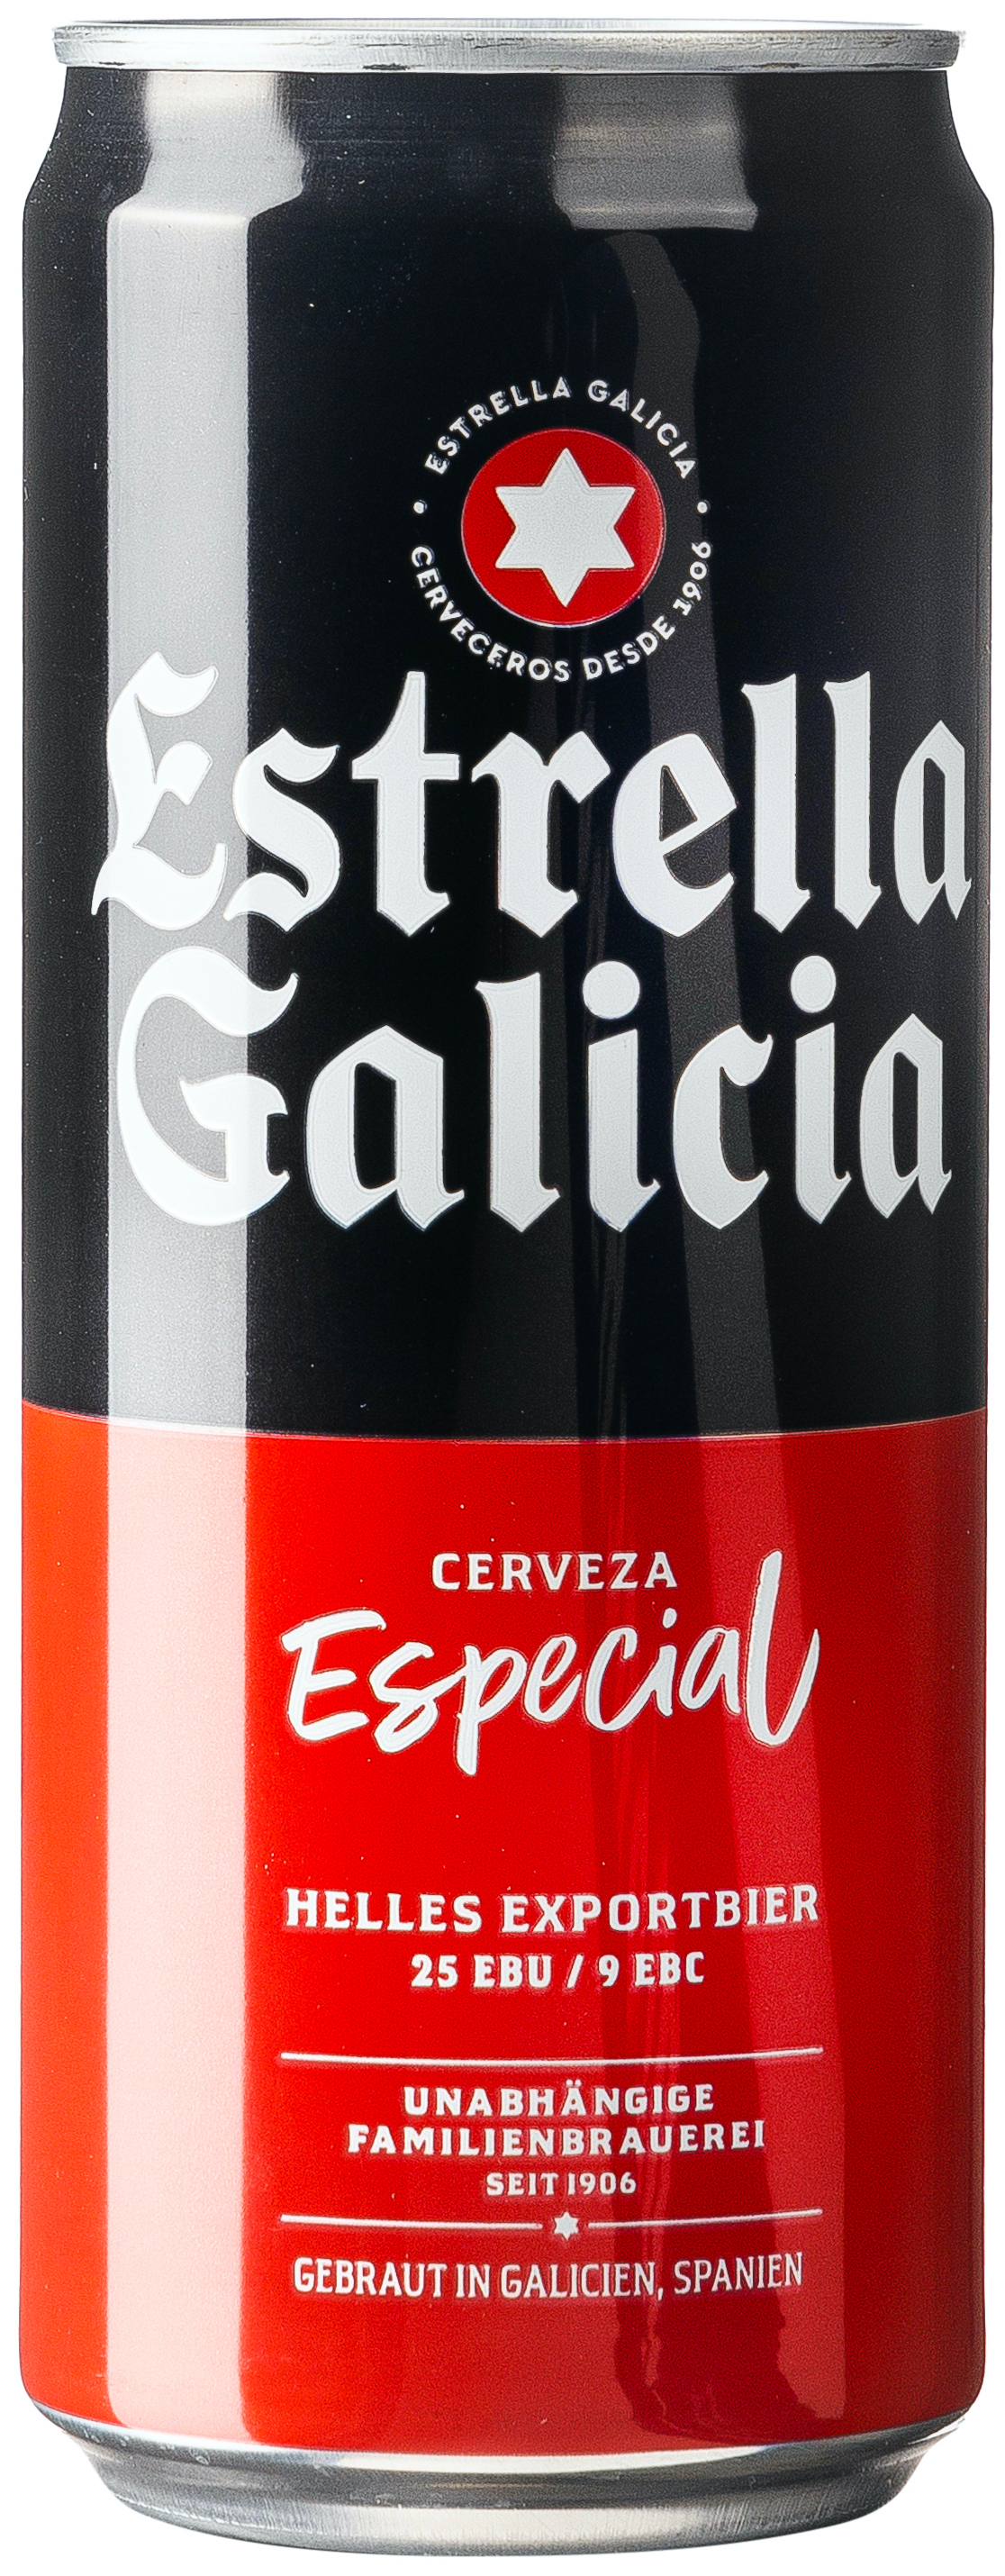 Estrella Galicia Especial 0,33L EINWEG